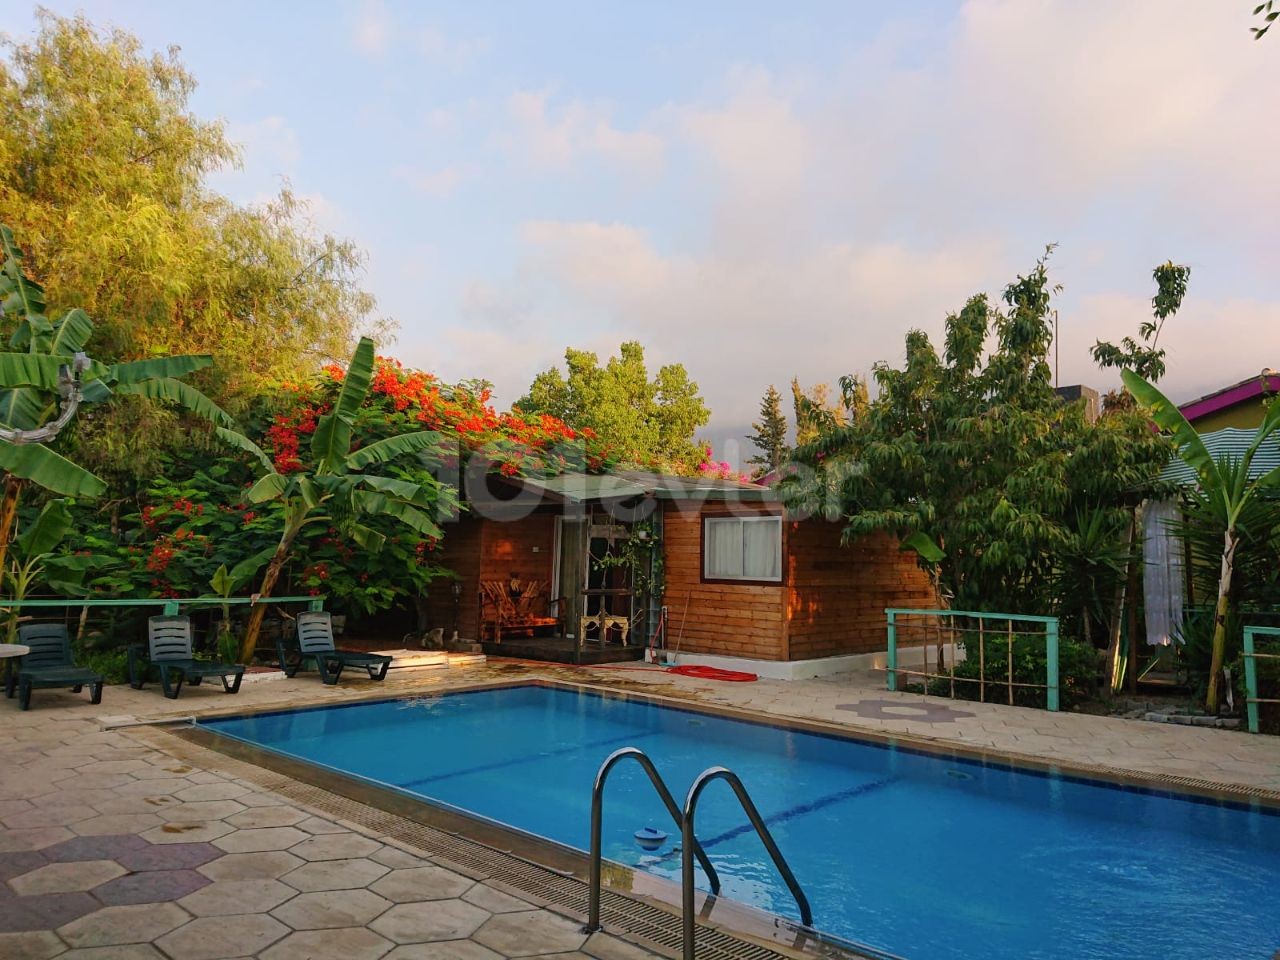 Villa in Girne Yeşiltepe 1,5 Hektar Garten. Gleichwertige Eigentumsurkunde. Großer großer Garten und Pool.